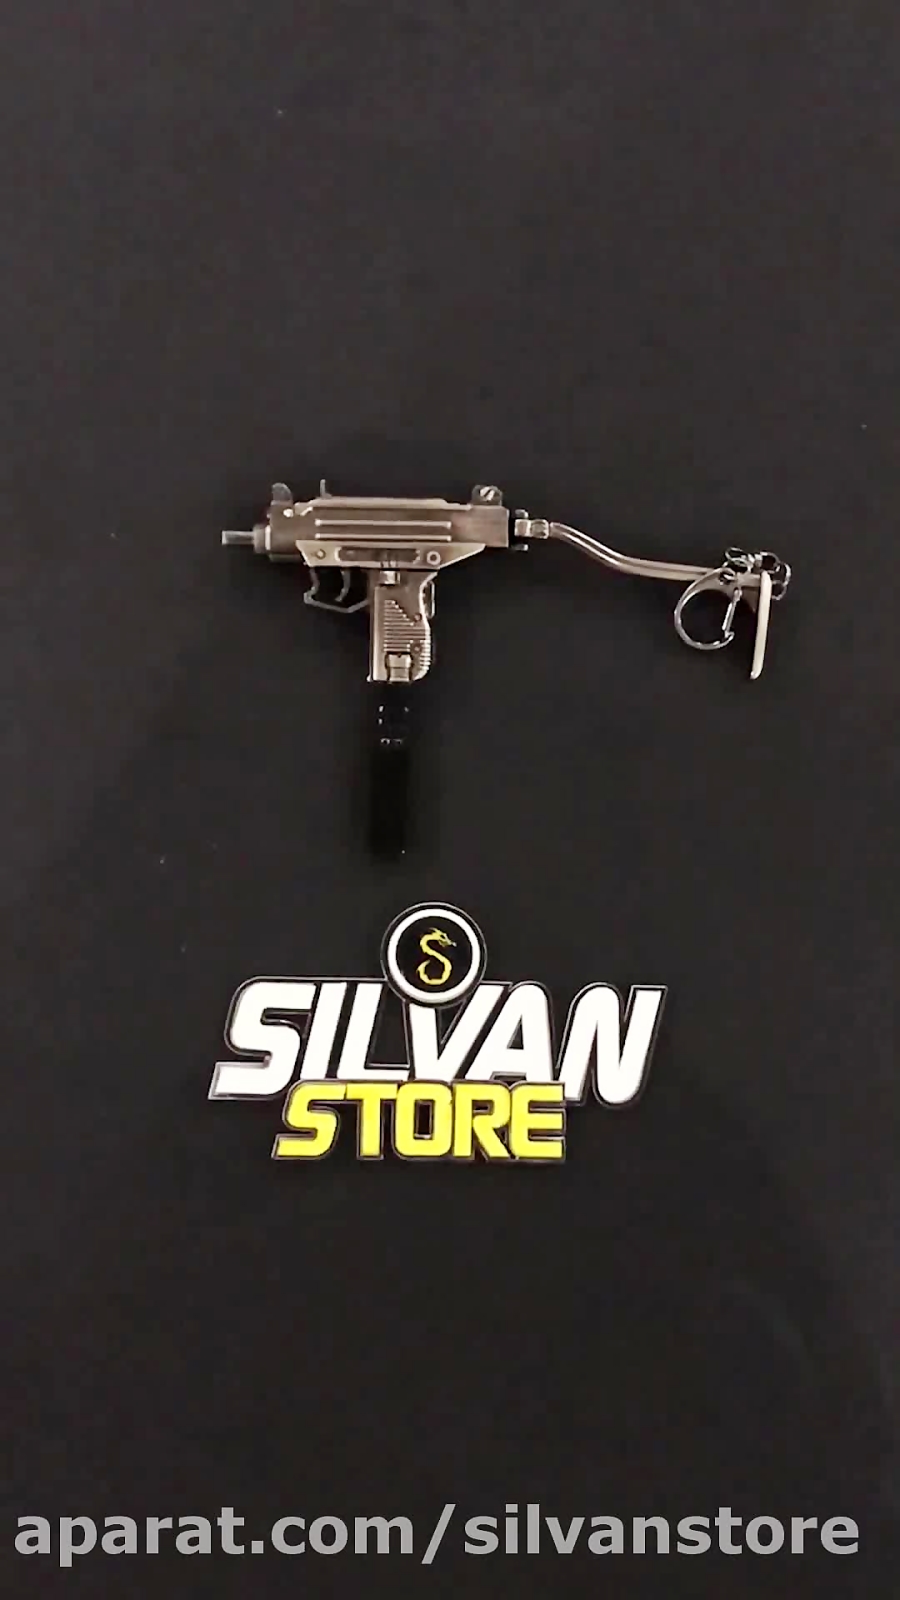 خرید ماکت فلزی تفنگ Uzi با قیمت مناسب از فروشگاه silvanstore. com